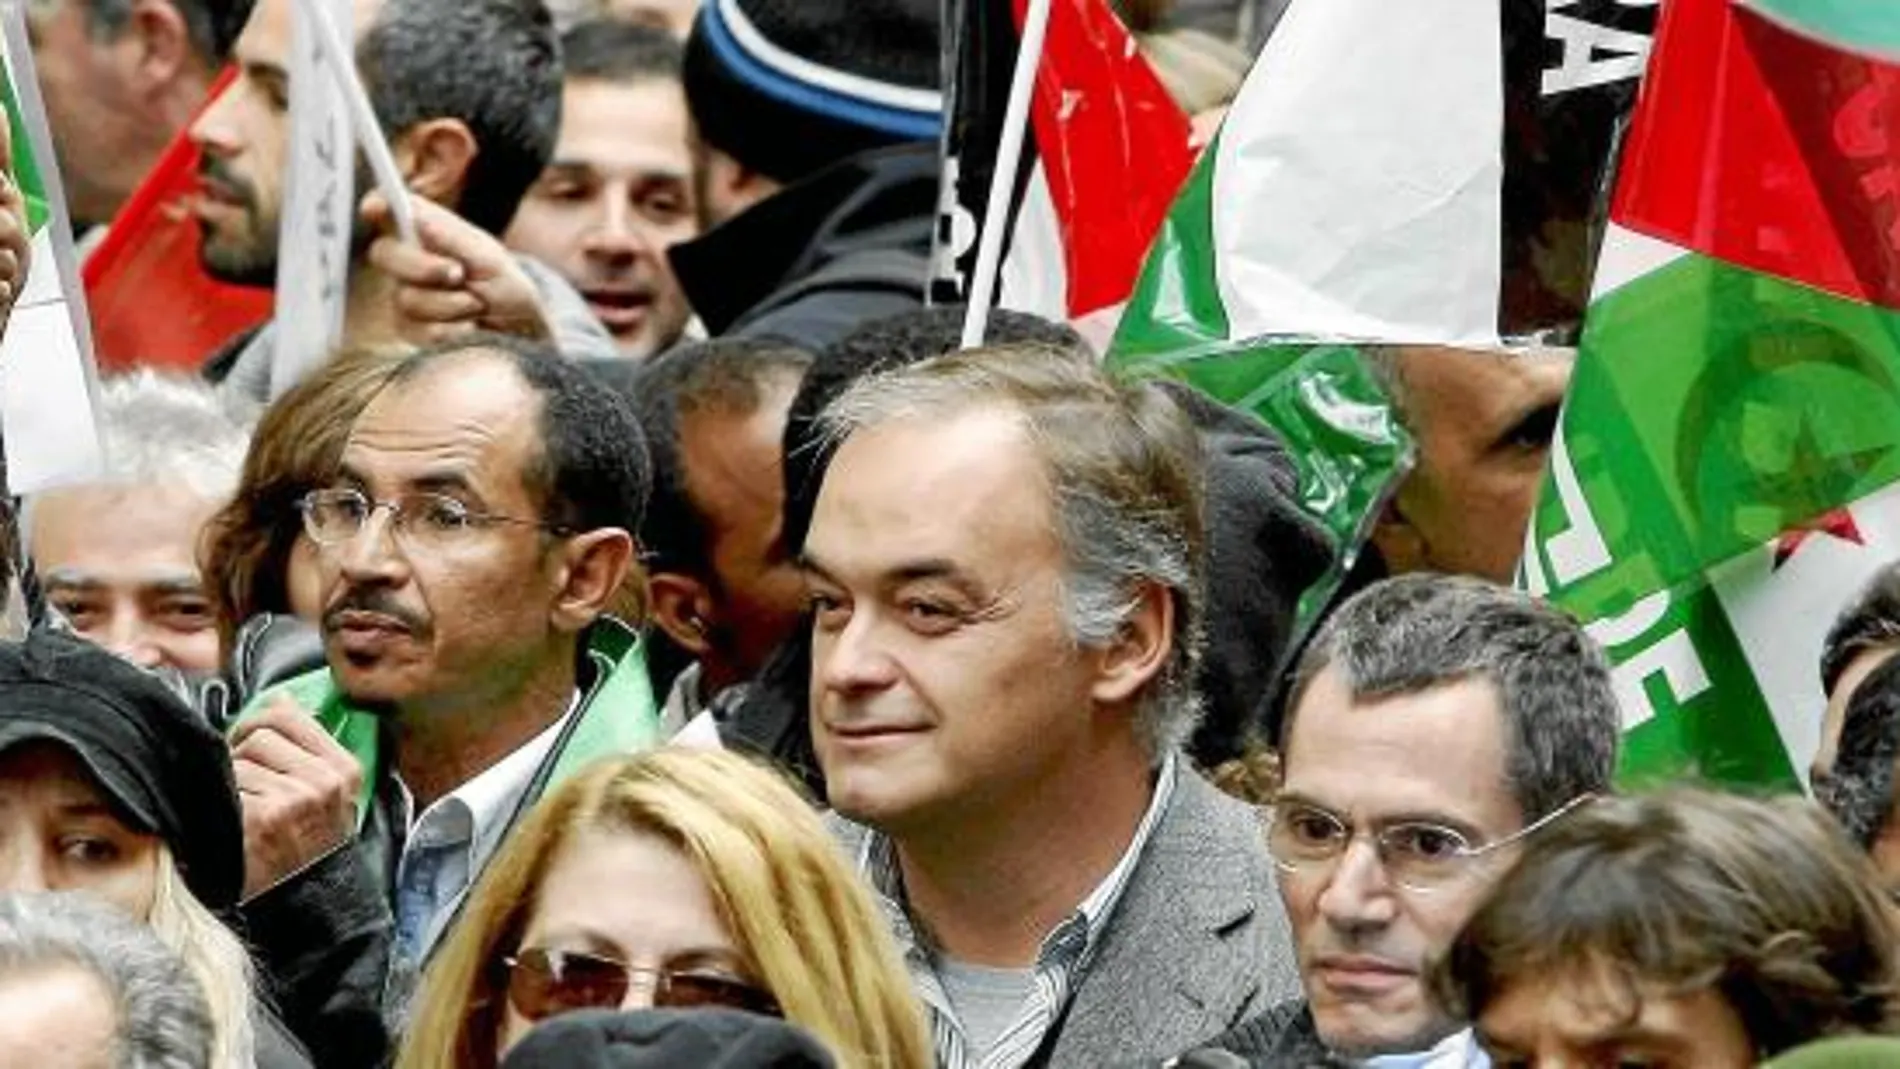 González Pons, vicesecretario general de Comunicación del PP, participó el sábado en una manifestación a favor de los saharauis